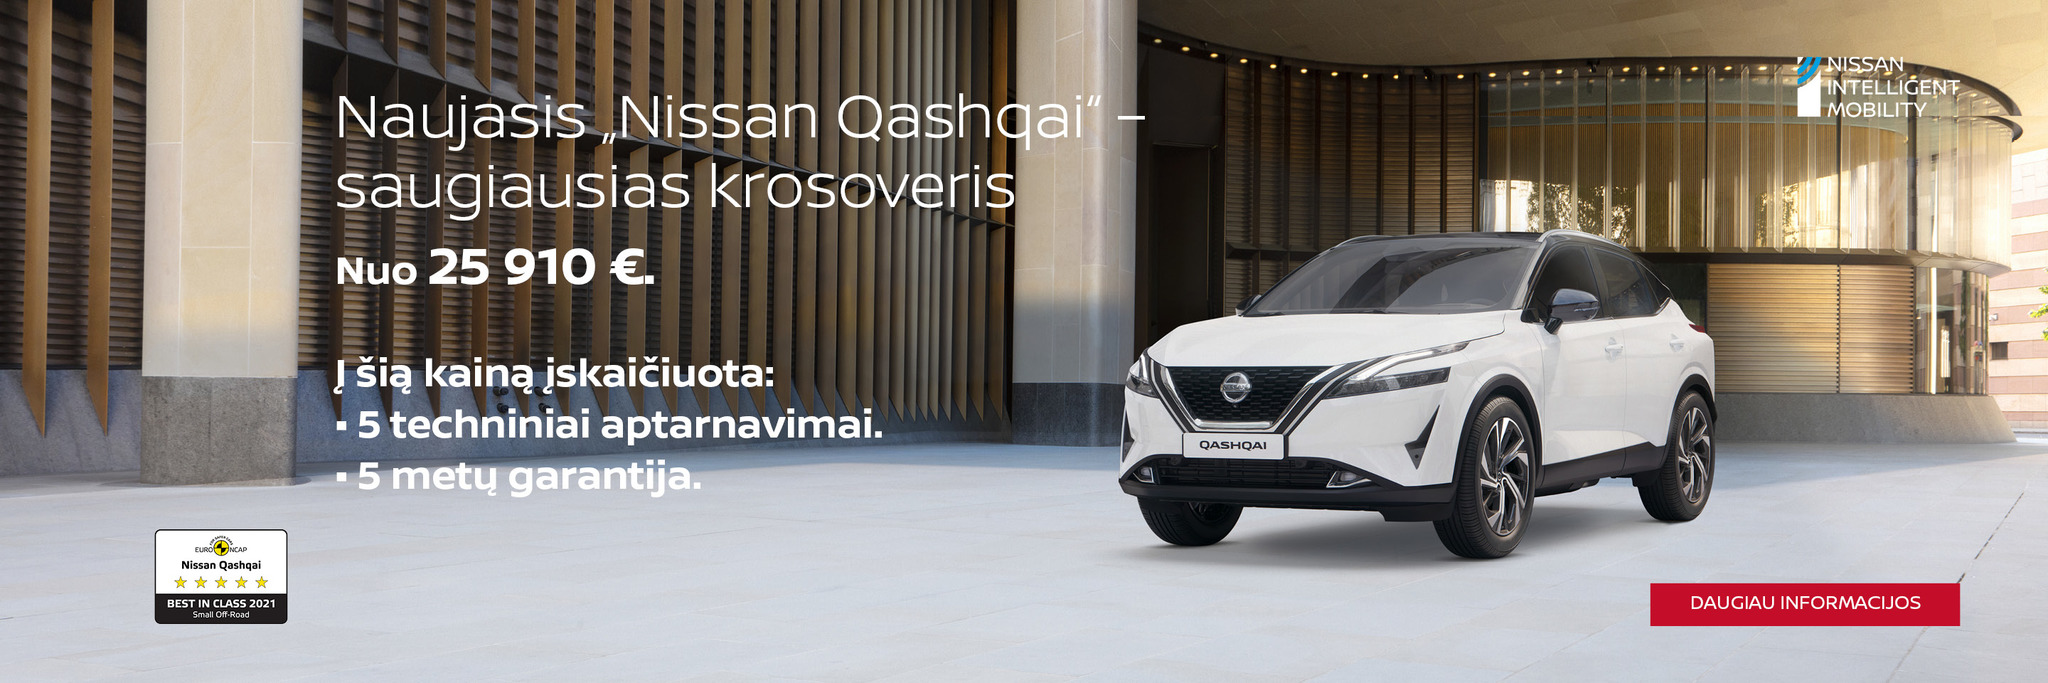 Naujasis Nissan Qashai nuo 24 910€